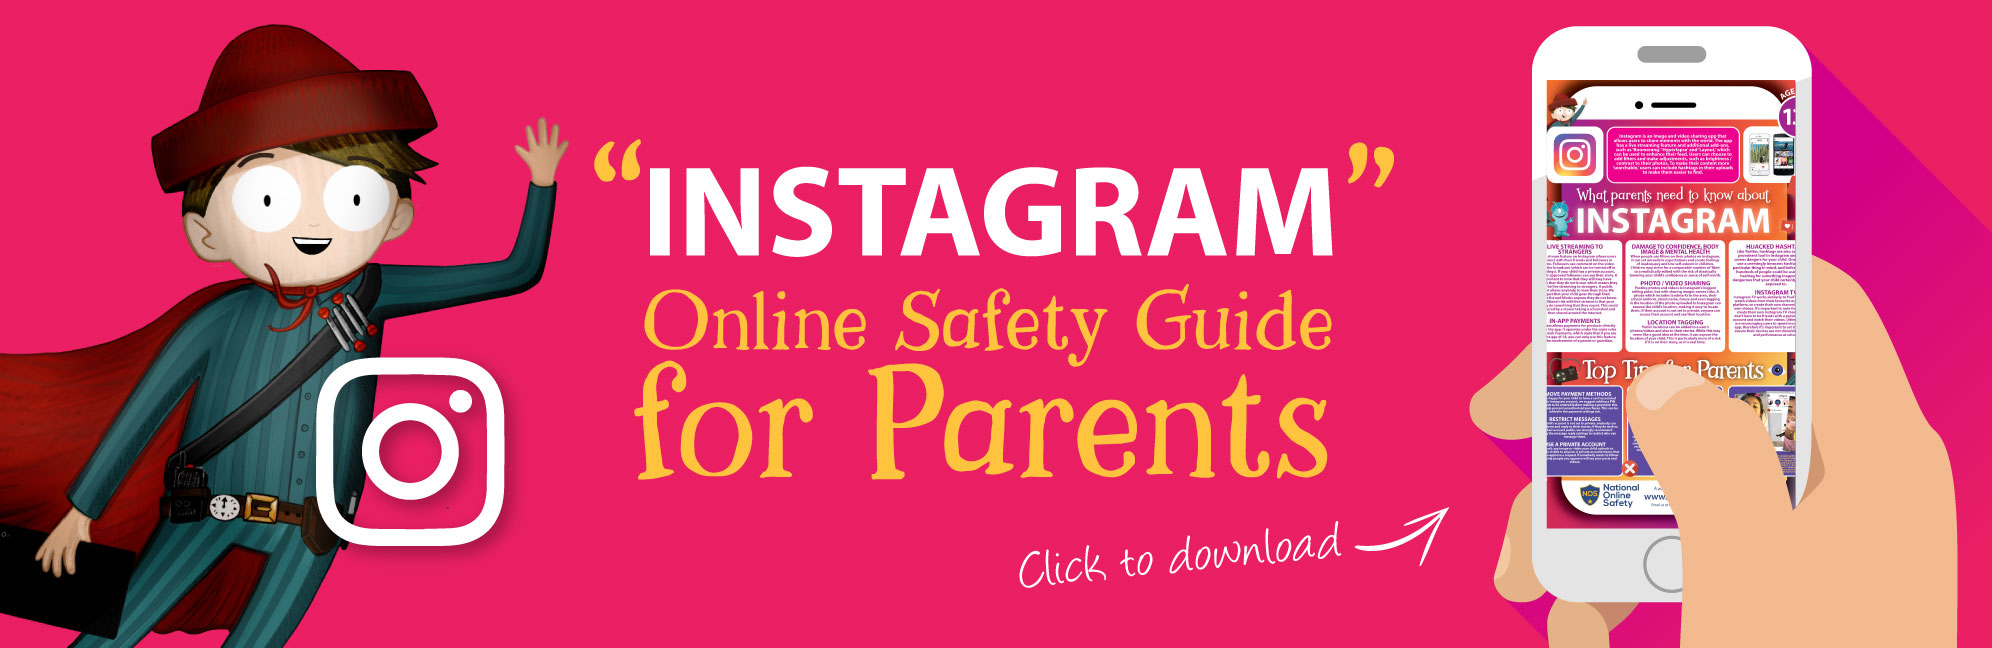 Instagram-Online-Safety-Parents-Guide-Web-Image-121118-V1